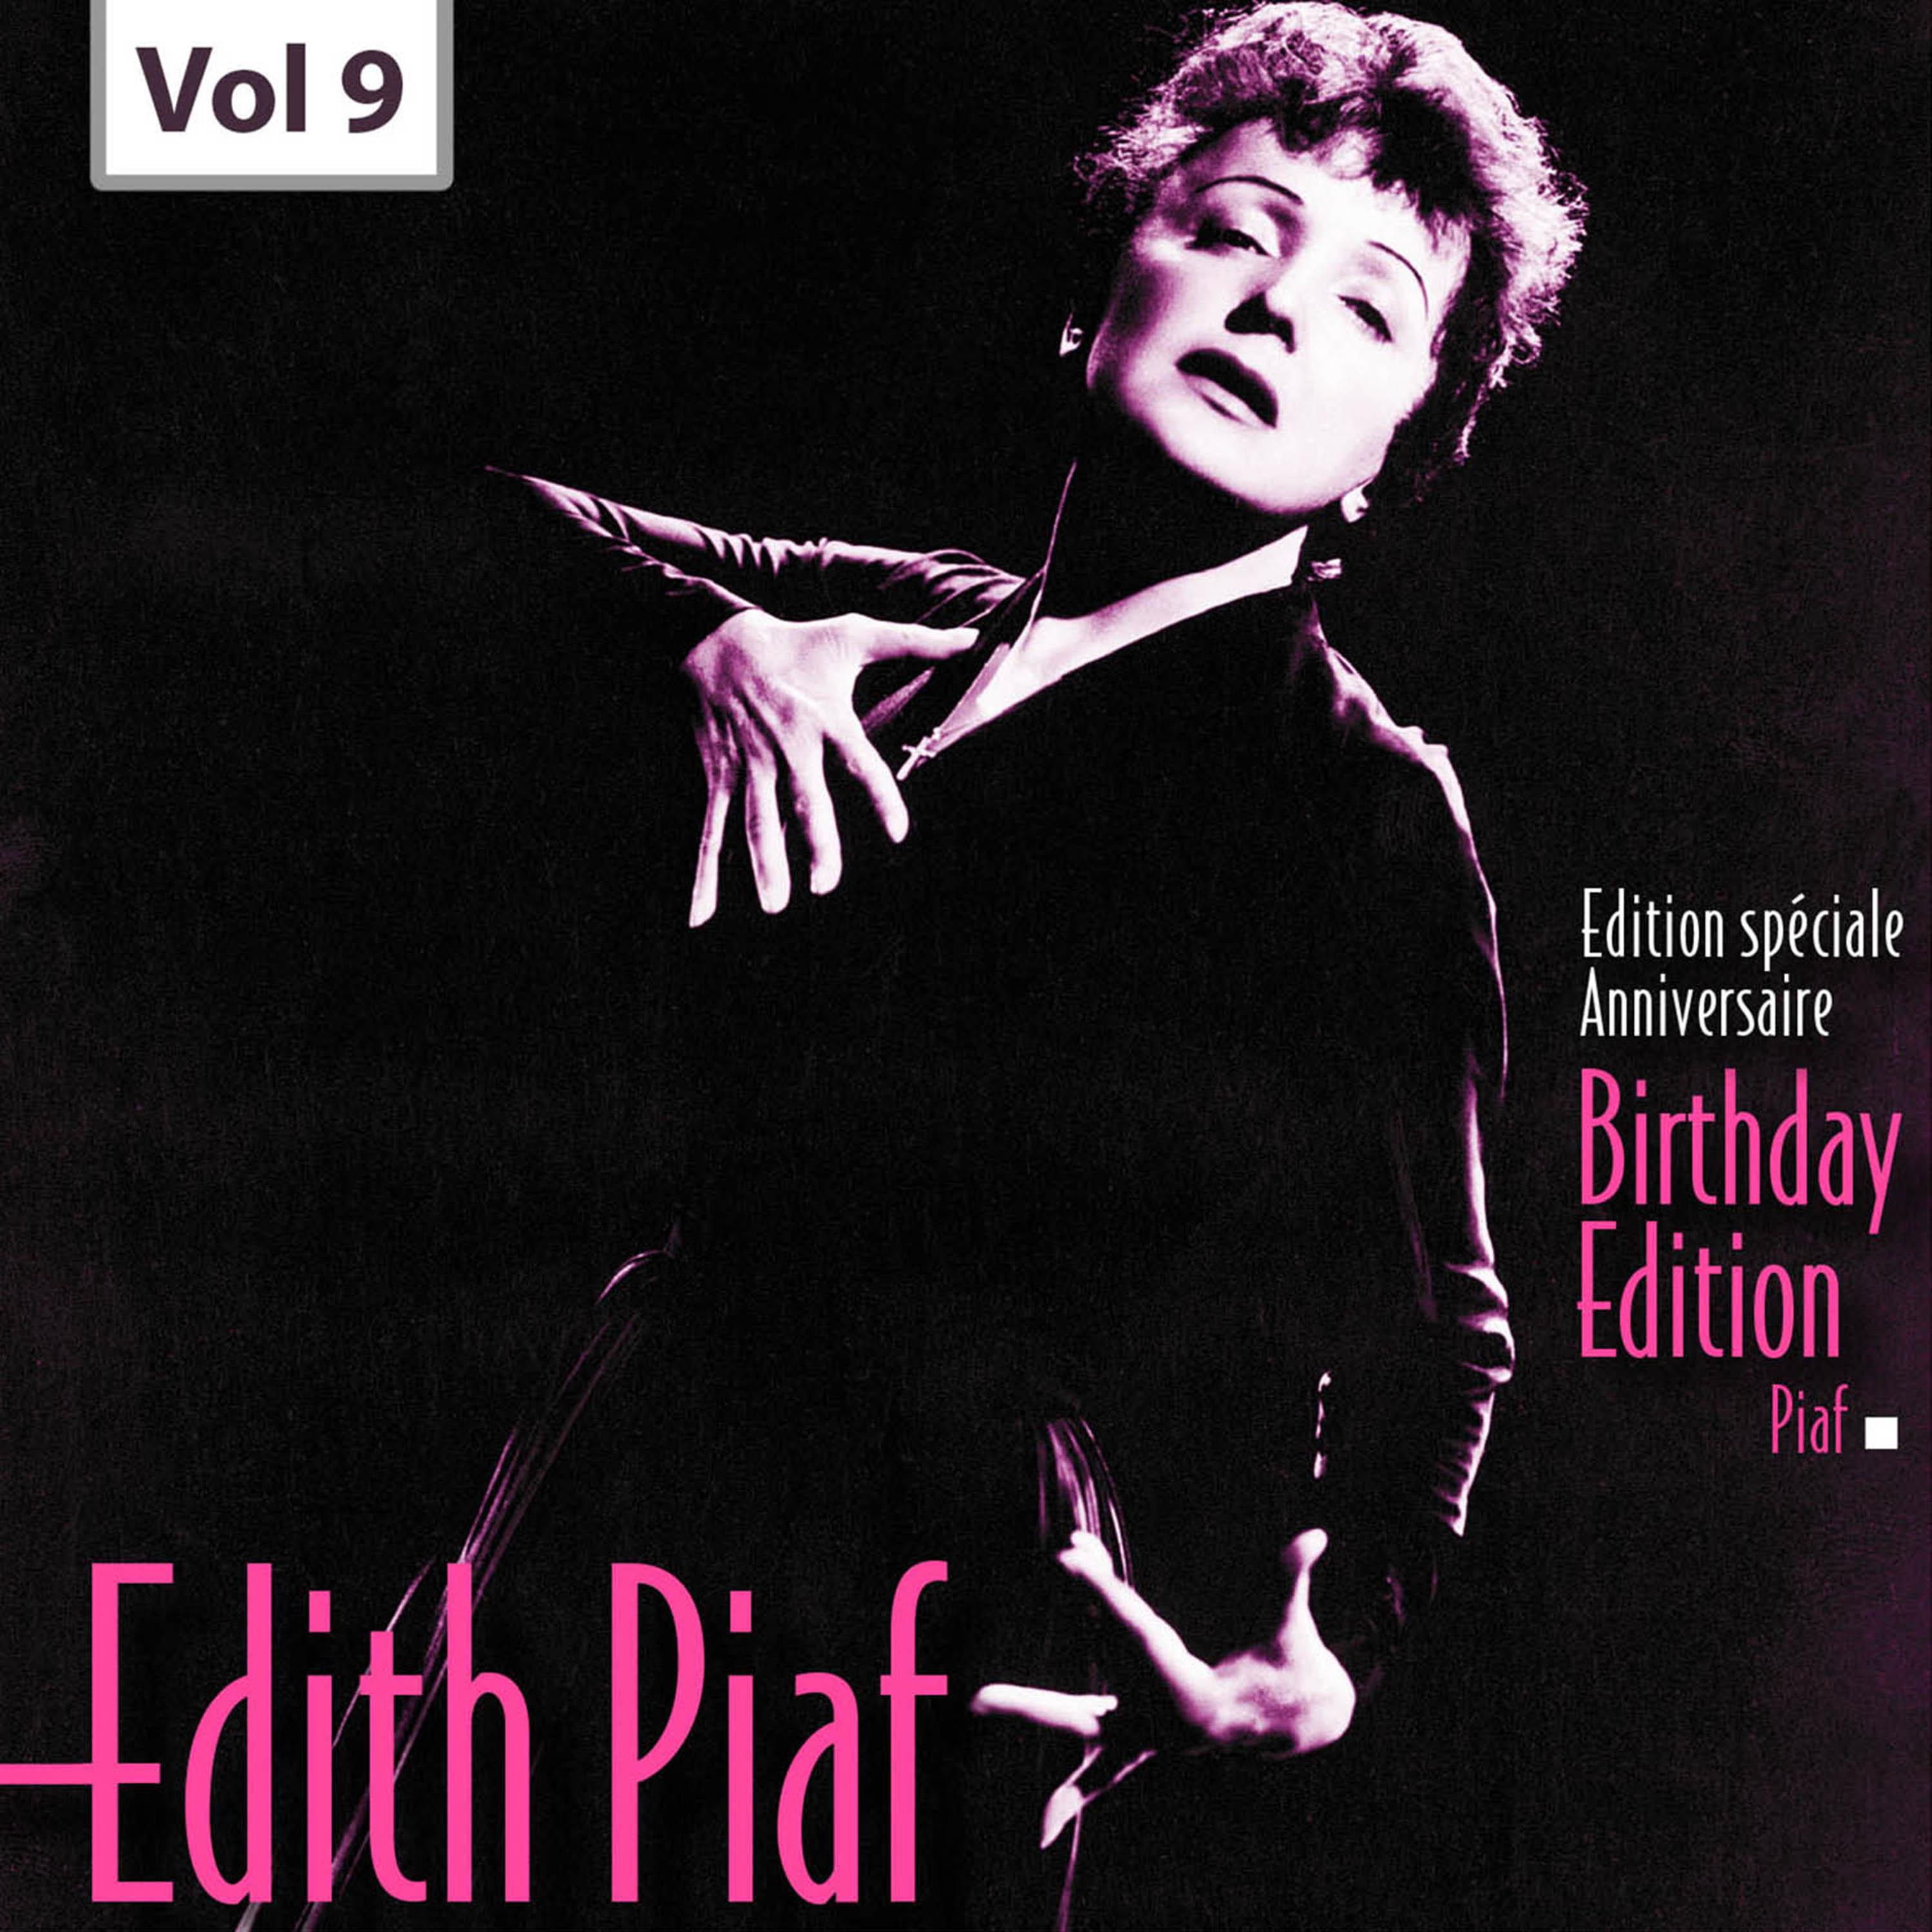 Edition Speciale Anniversaire. Birhday Edition - Edith Piaf, Vol.9